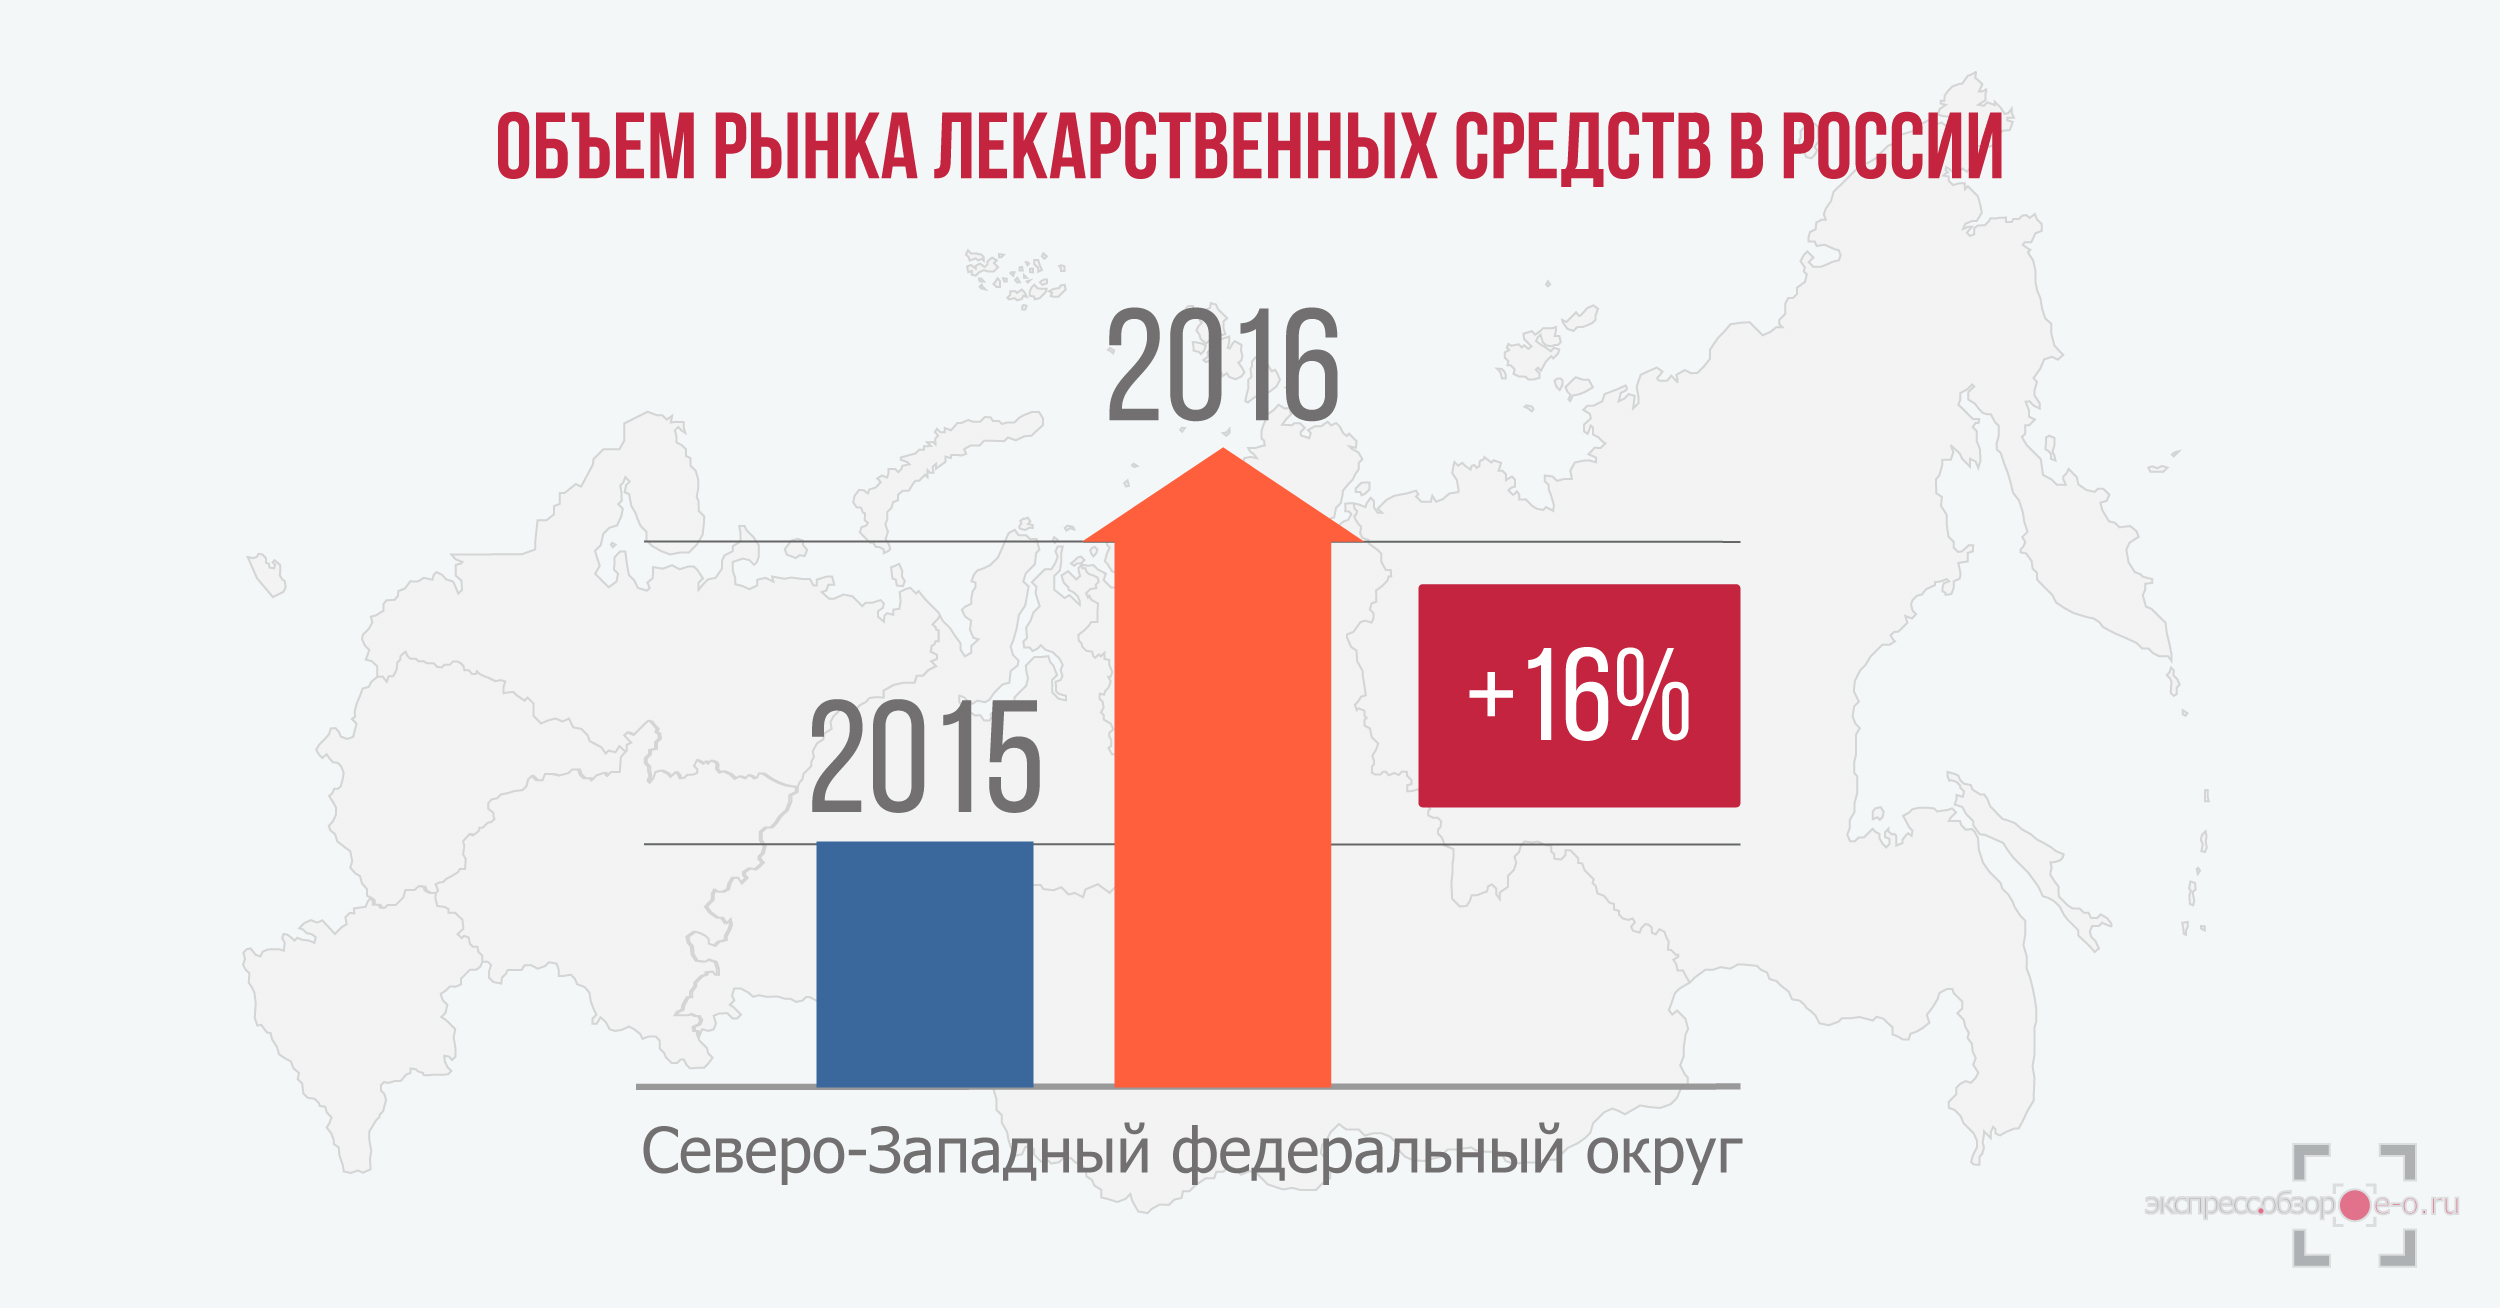 объем рынка лекарственных средств в России в 2016 году